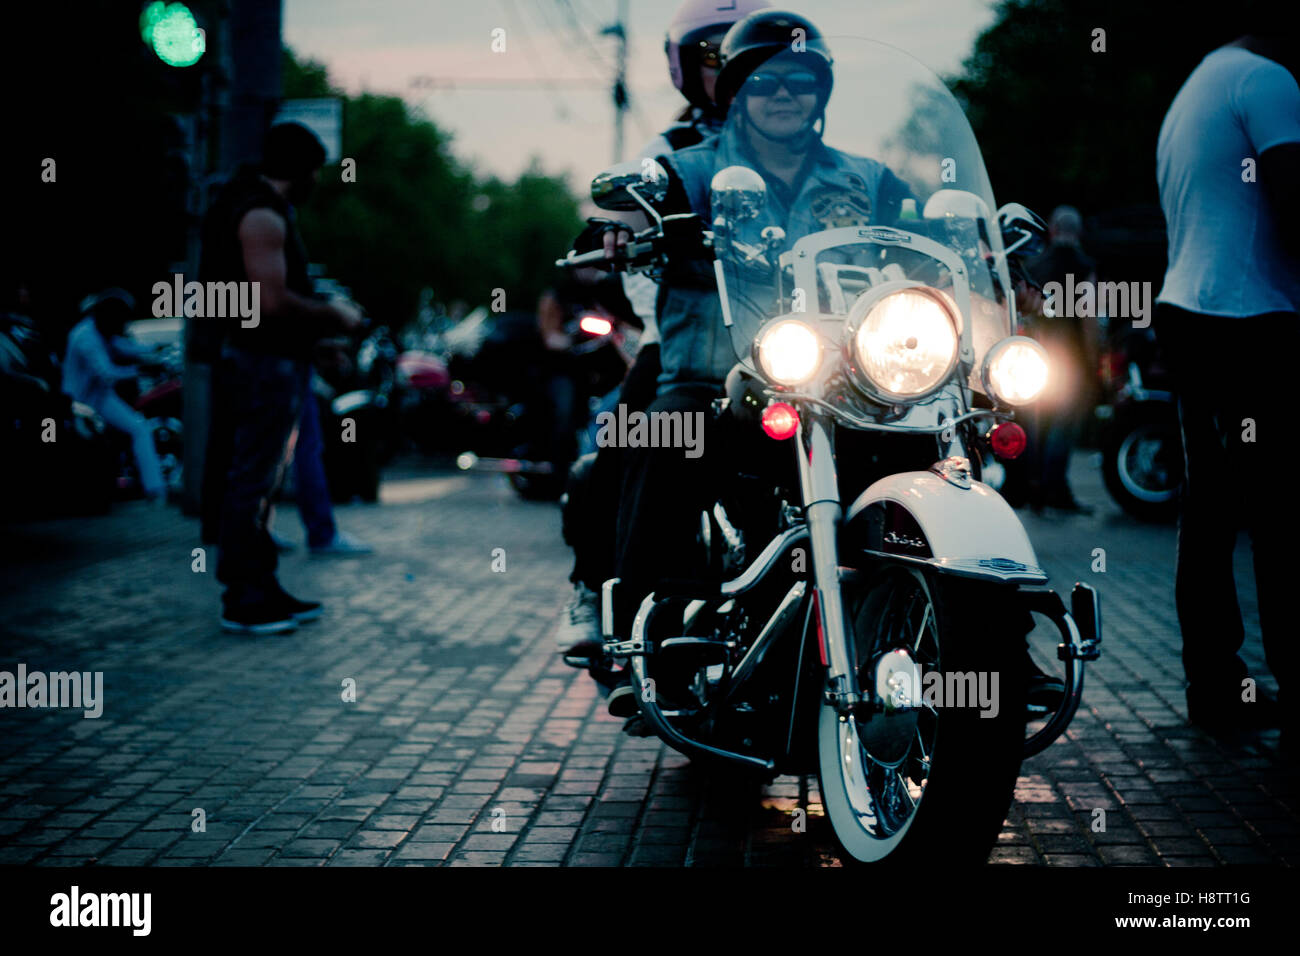 Moskau, Russland - 6. Oktober 2013: Eine Frau trägt einen Helm und Sonnenbrille auf einem weißen Harley-Davidson Motorrad mit einem beleuchteten h Stockfoto